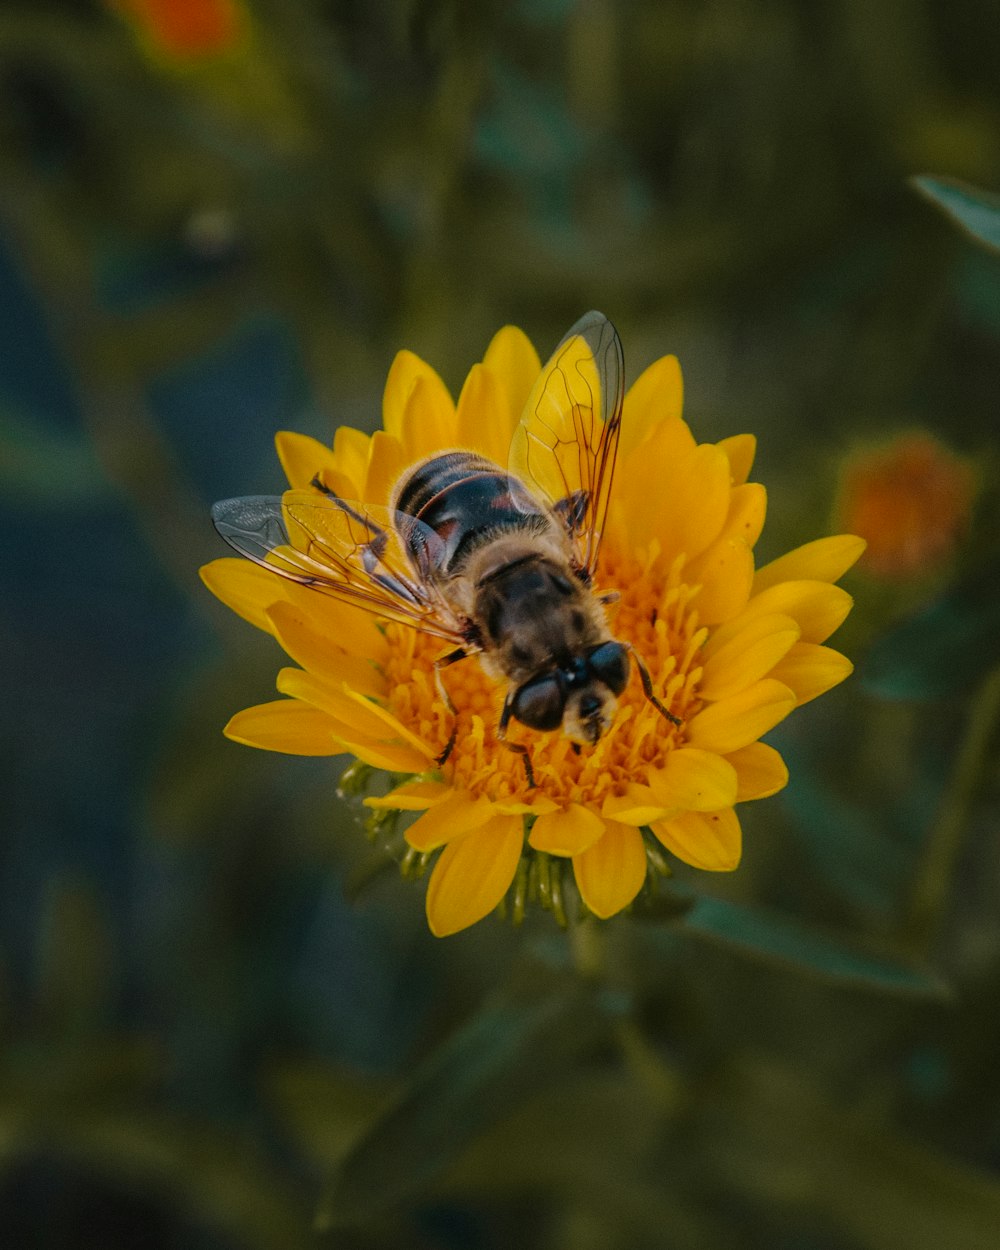 Makrofotografie von brauner und schwarzer Wespe auf gelber Blume